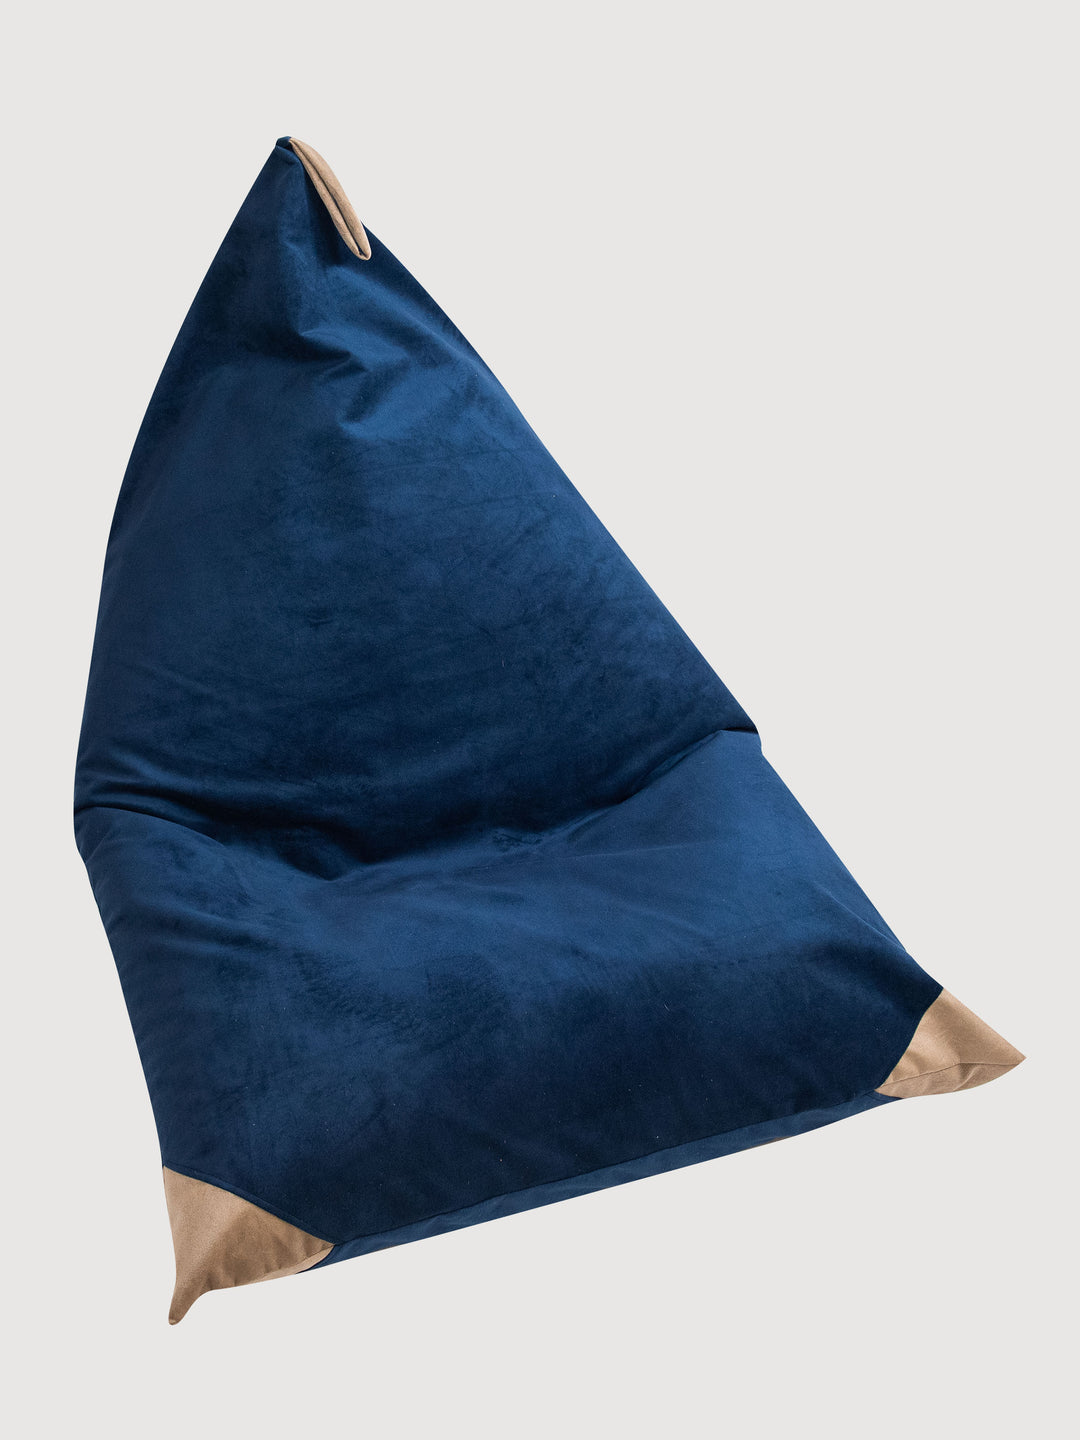 Cojín de Interior Triangular - Azul